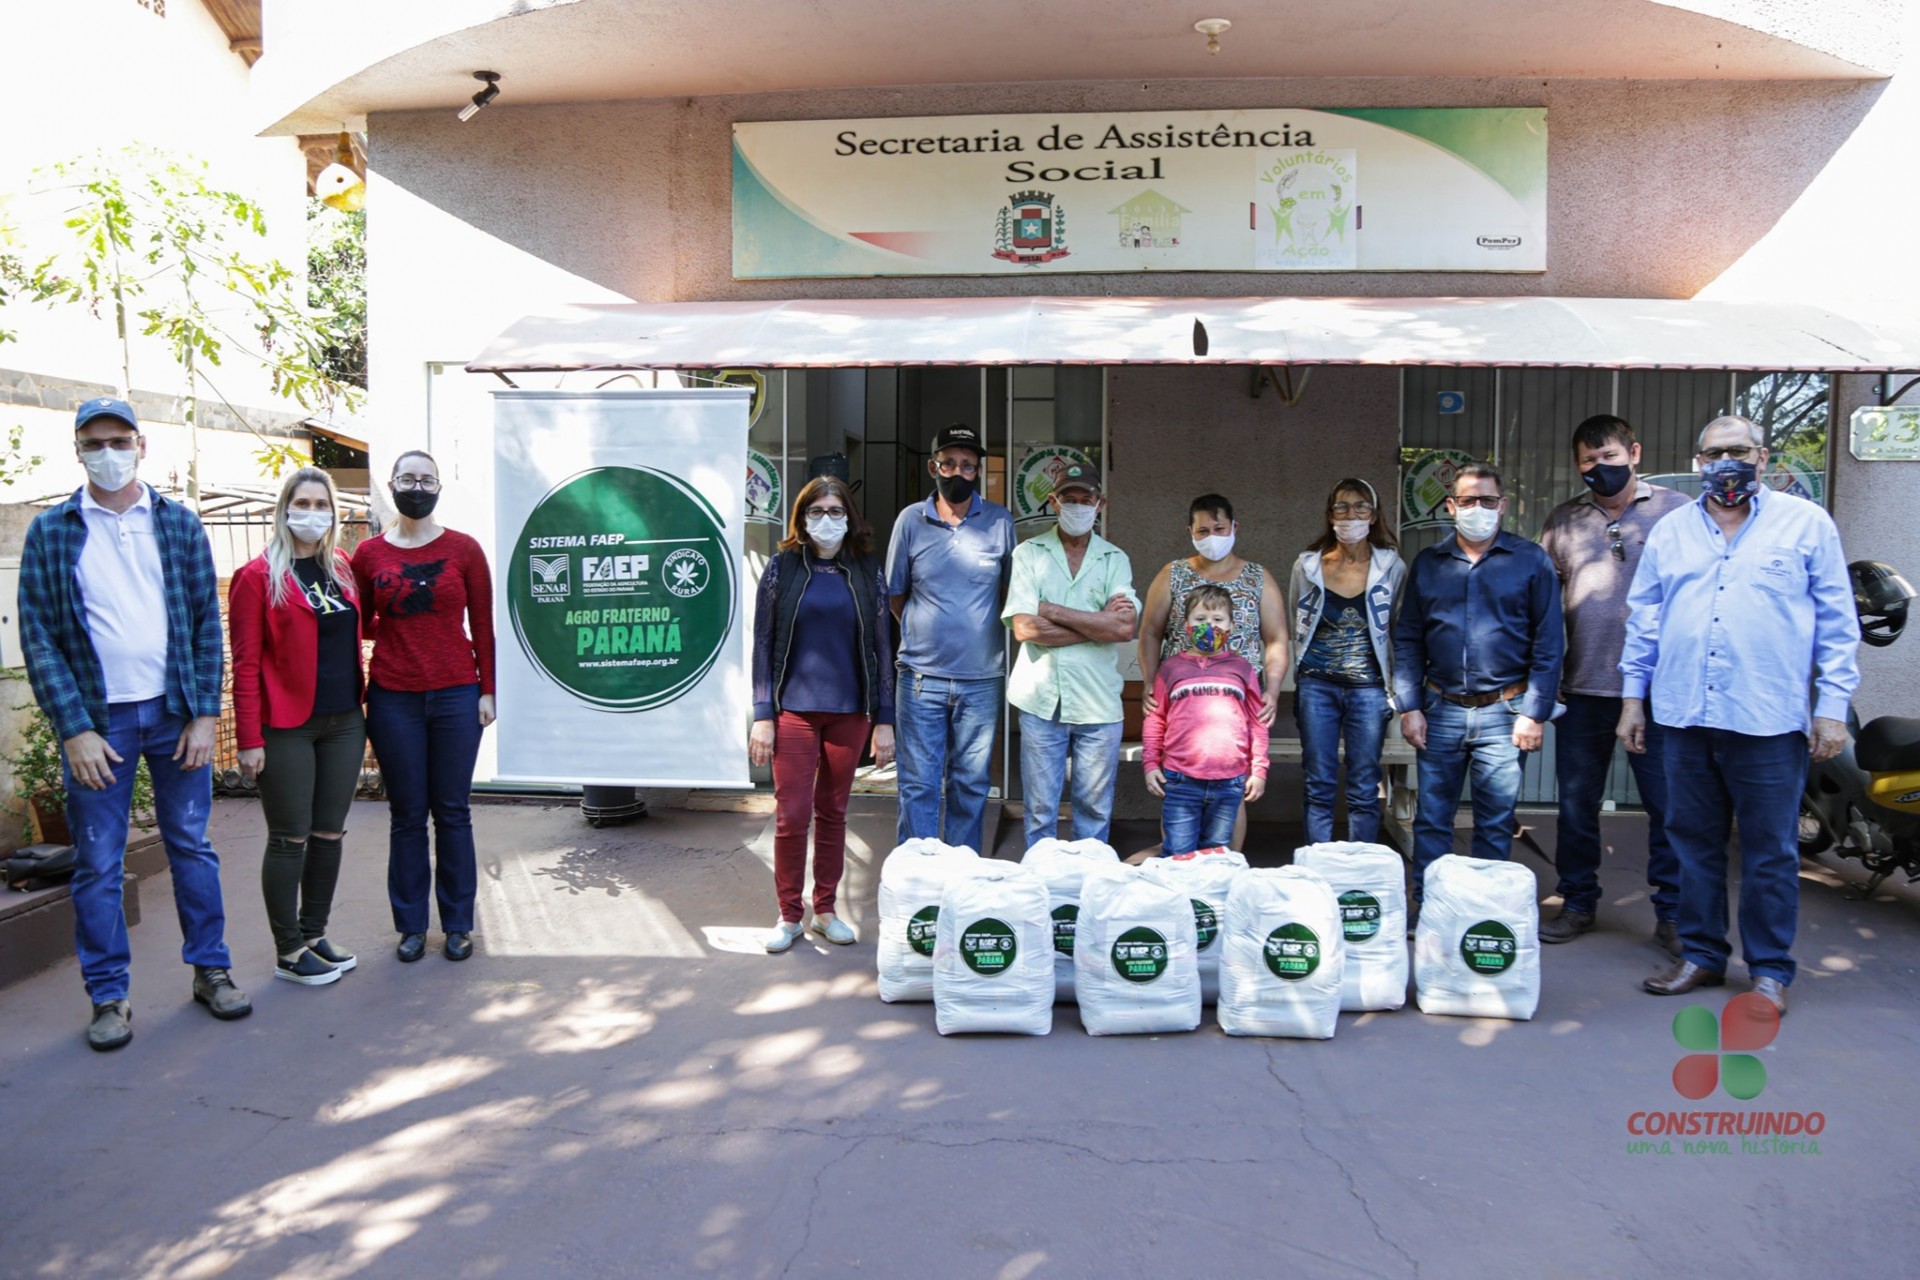 Missal recebeu do Sindicato Rural de Medianeira 70 cestas básicas do programa Agro Fraterno